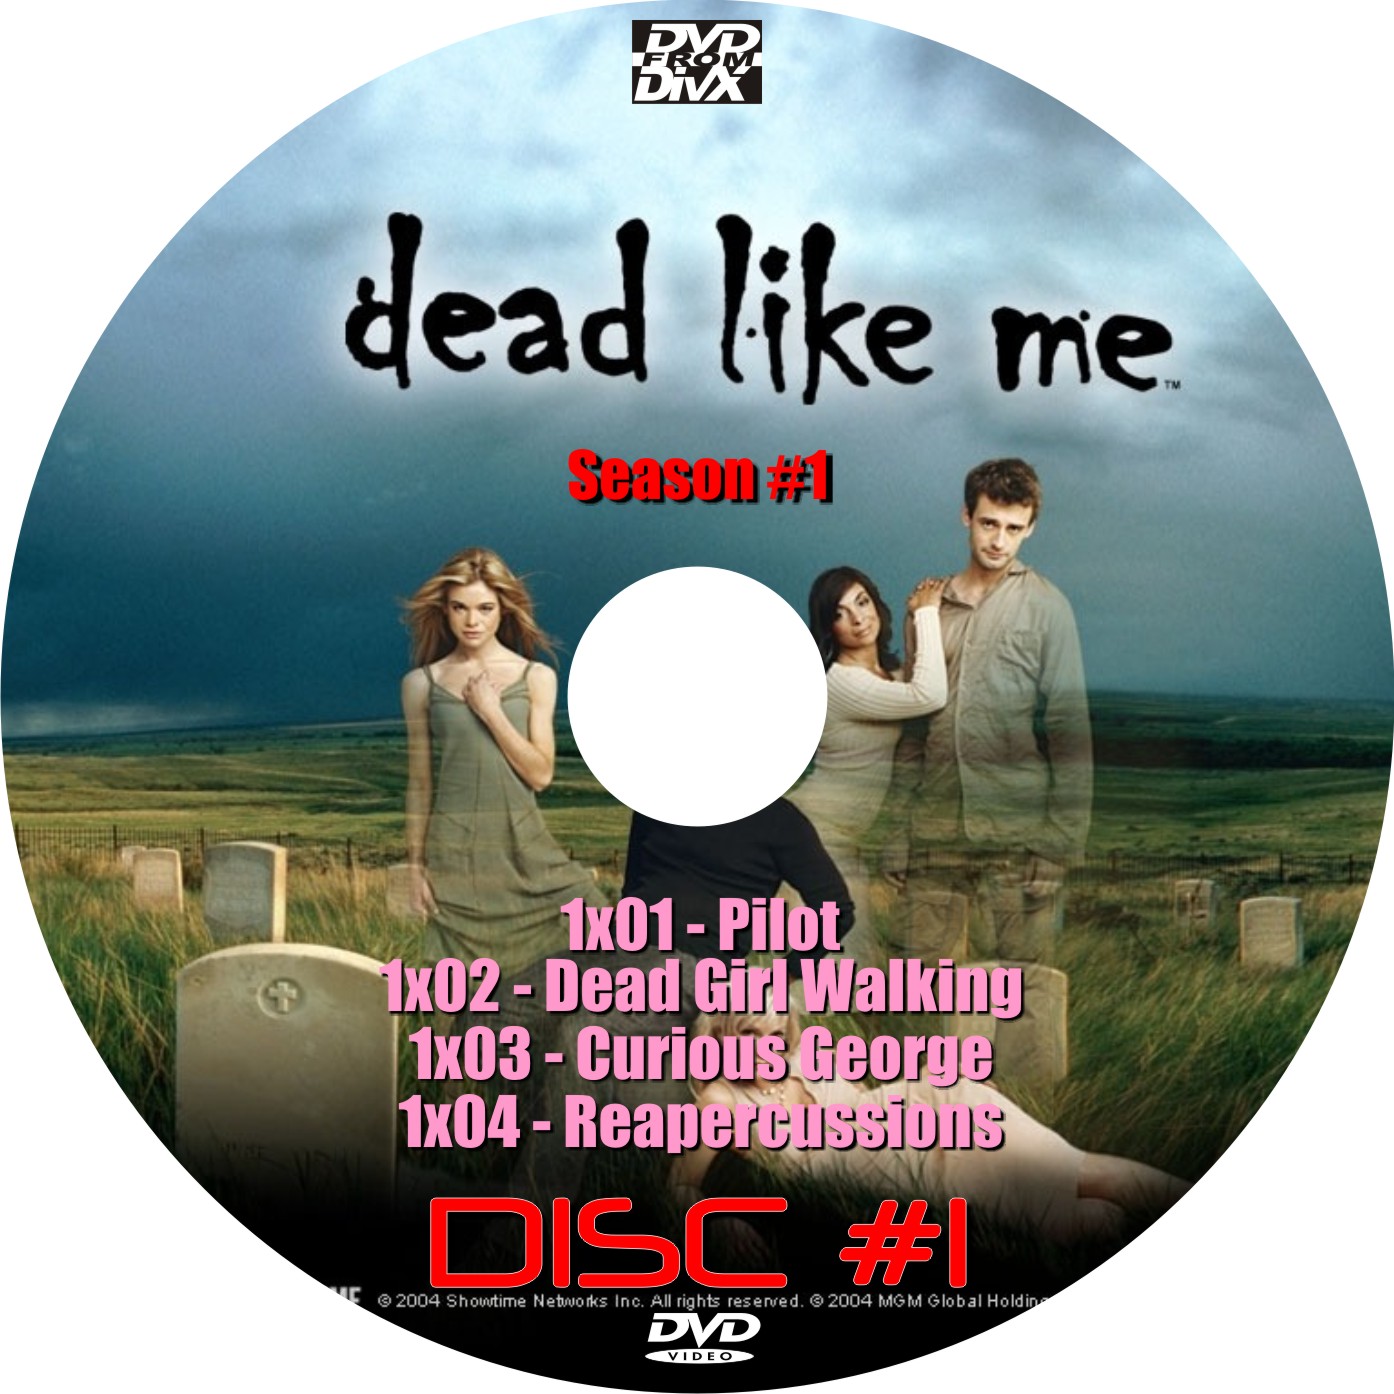 DeadLikeMe_S1D1_Cover.jpg